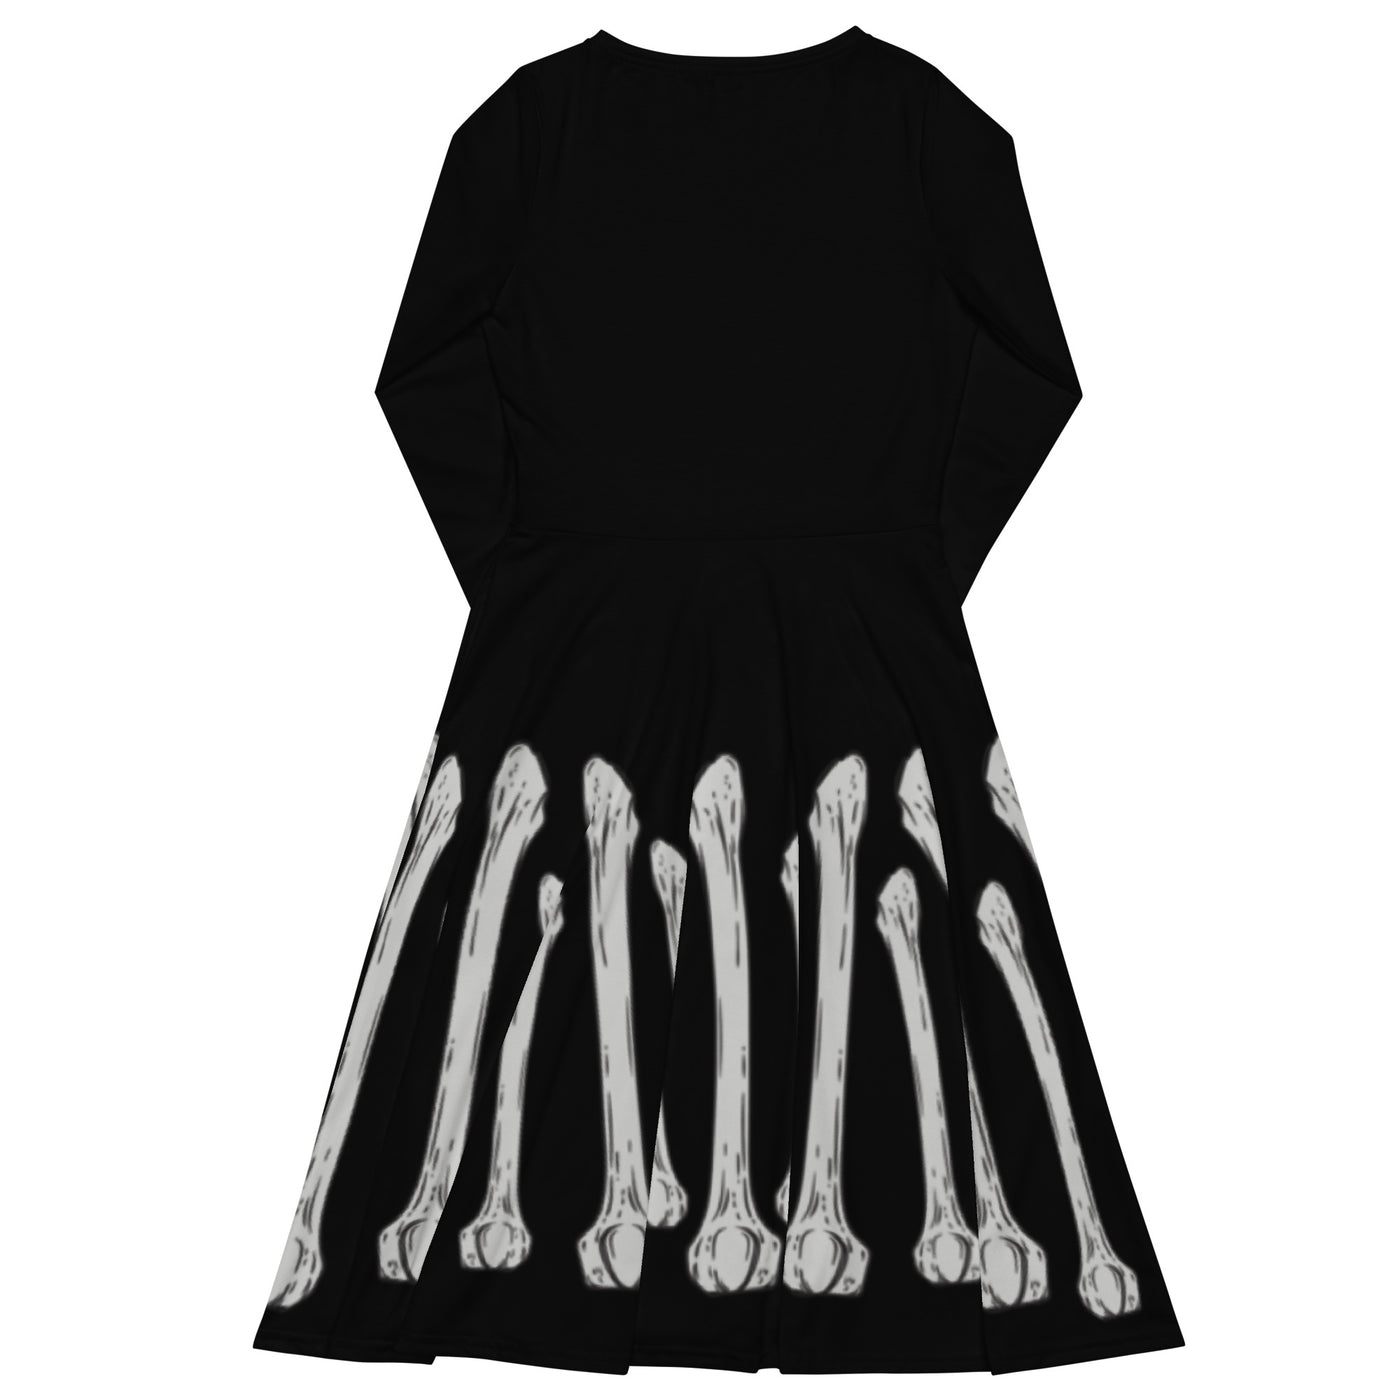 Spooky Skeleton Midi Dress